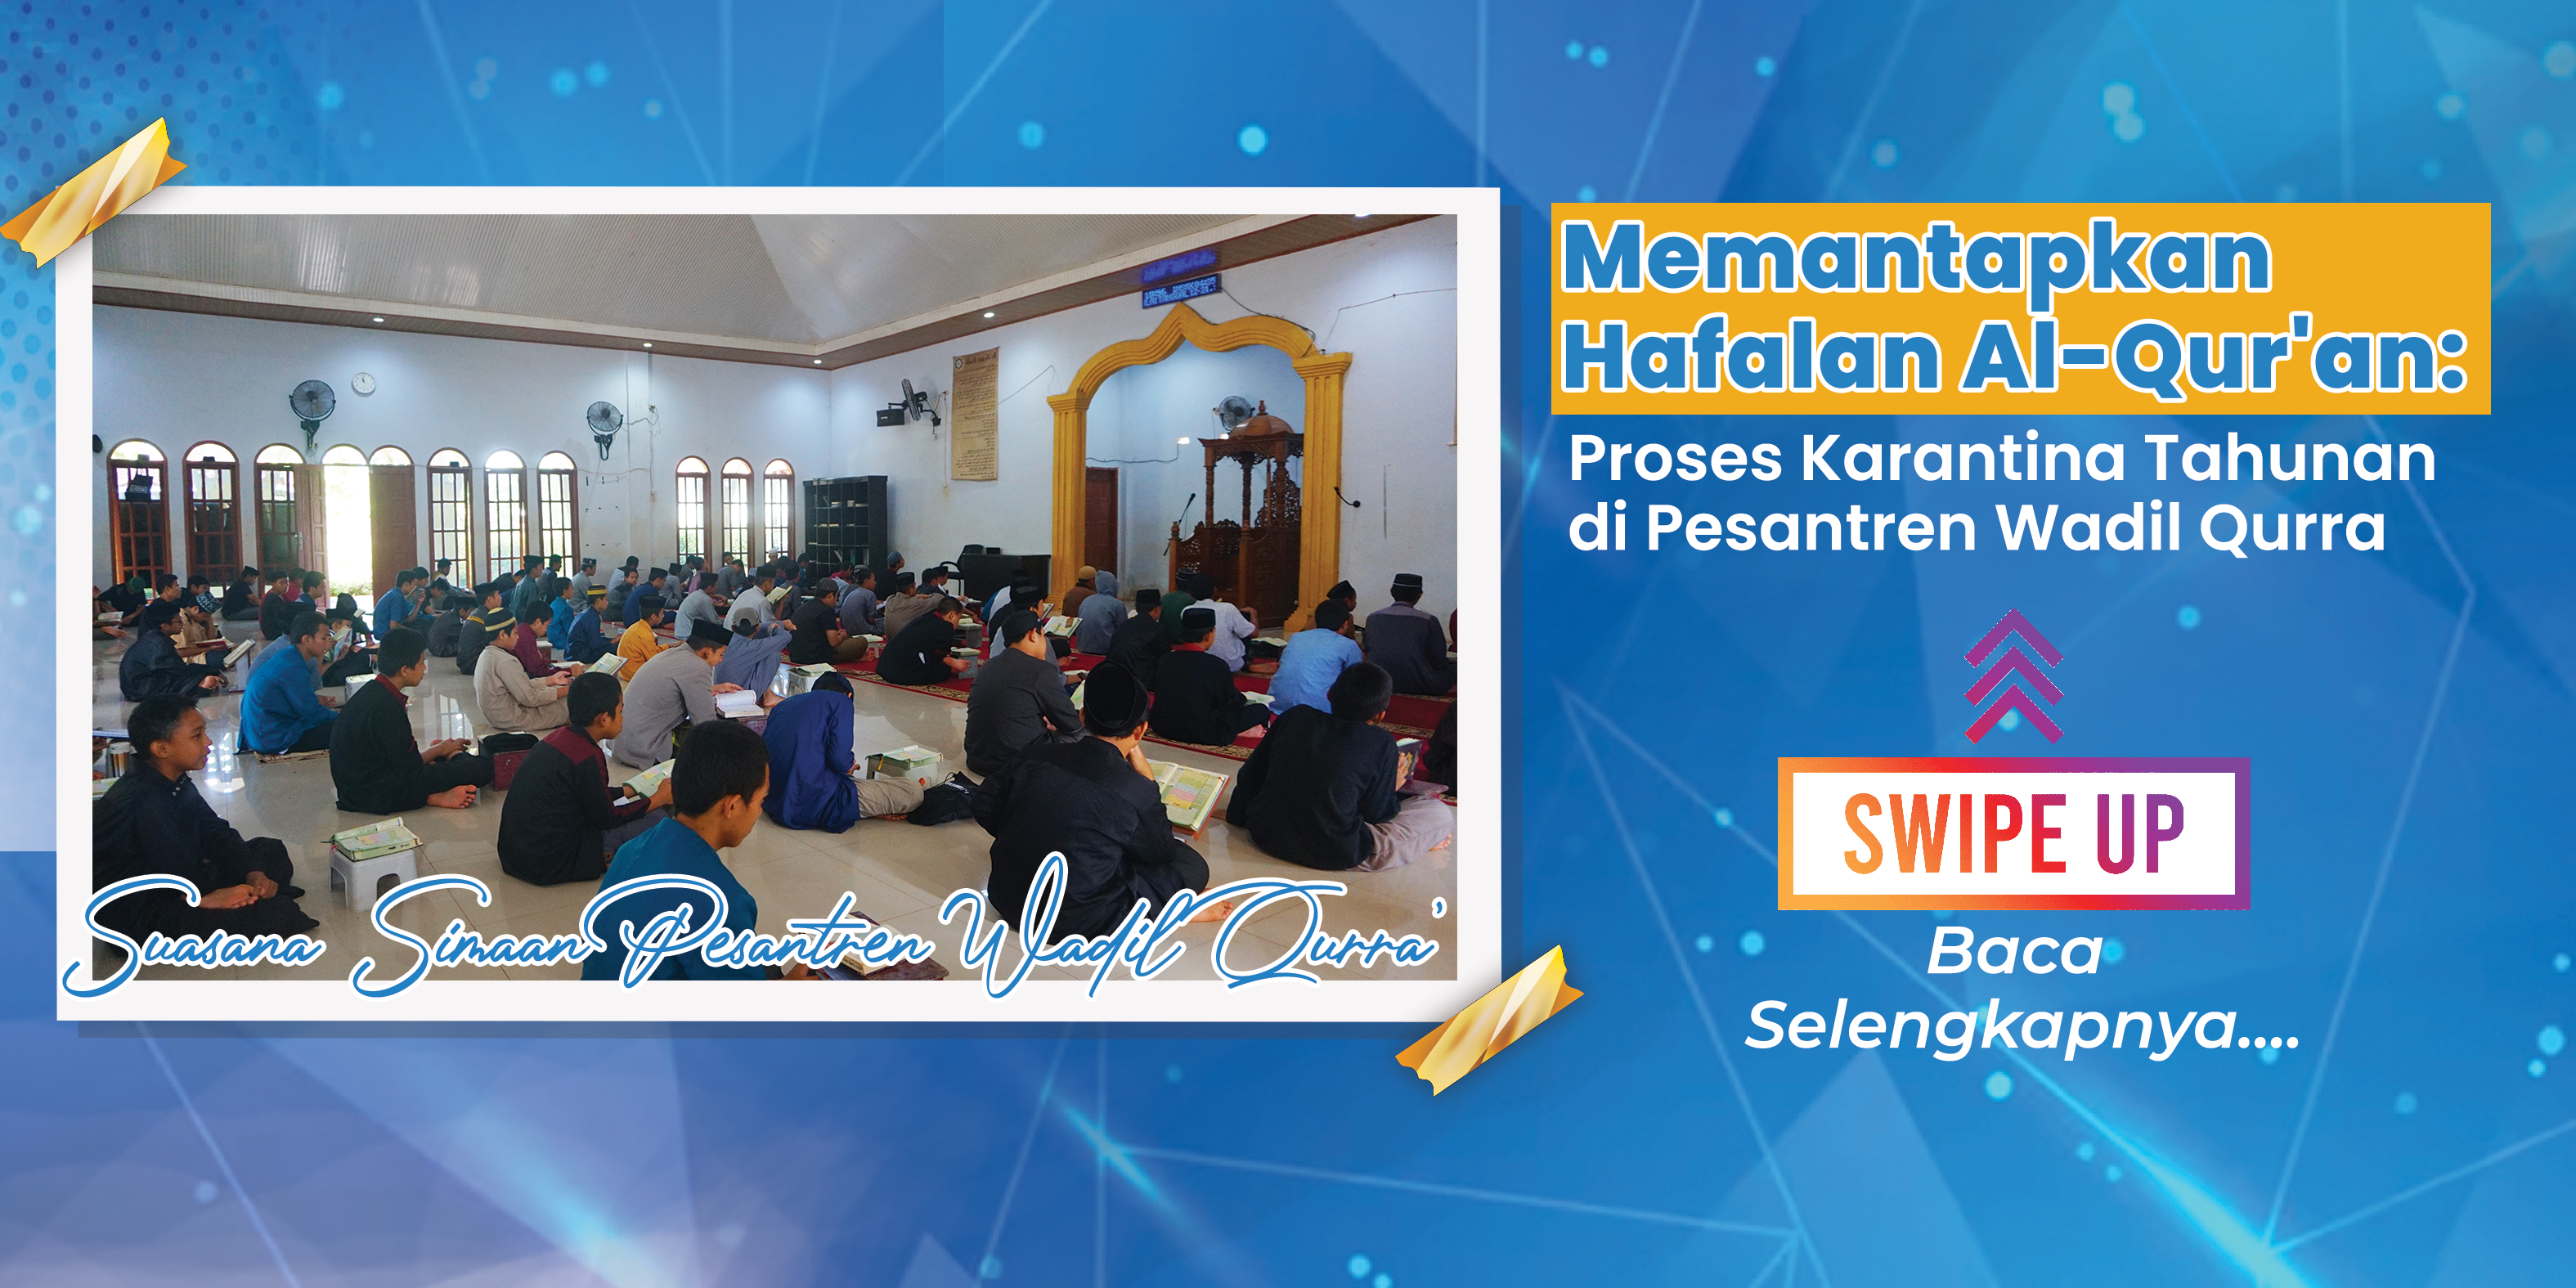 You are currently viewing Memantapkan Hafalan Al-Qur’an: Proses Karantina Tahunan di Pesantren Wadil Qurra